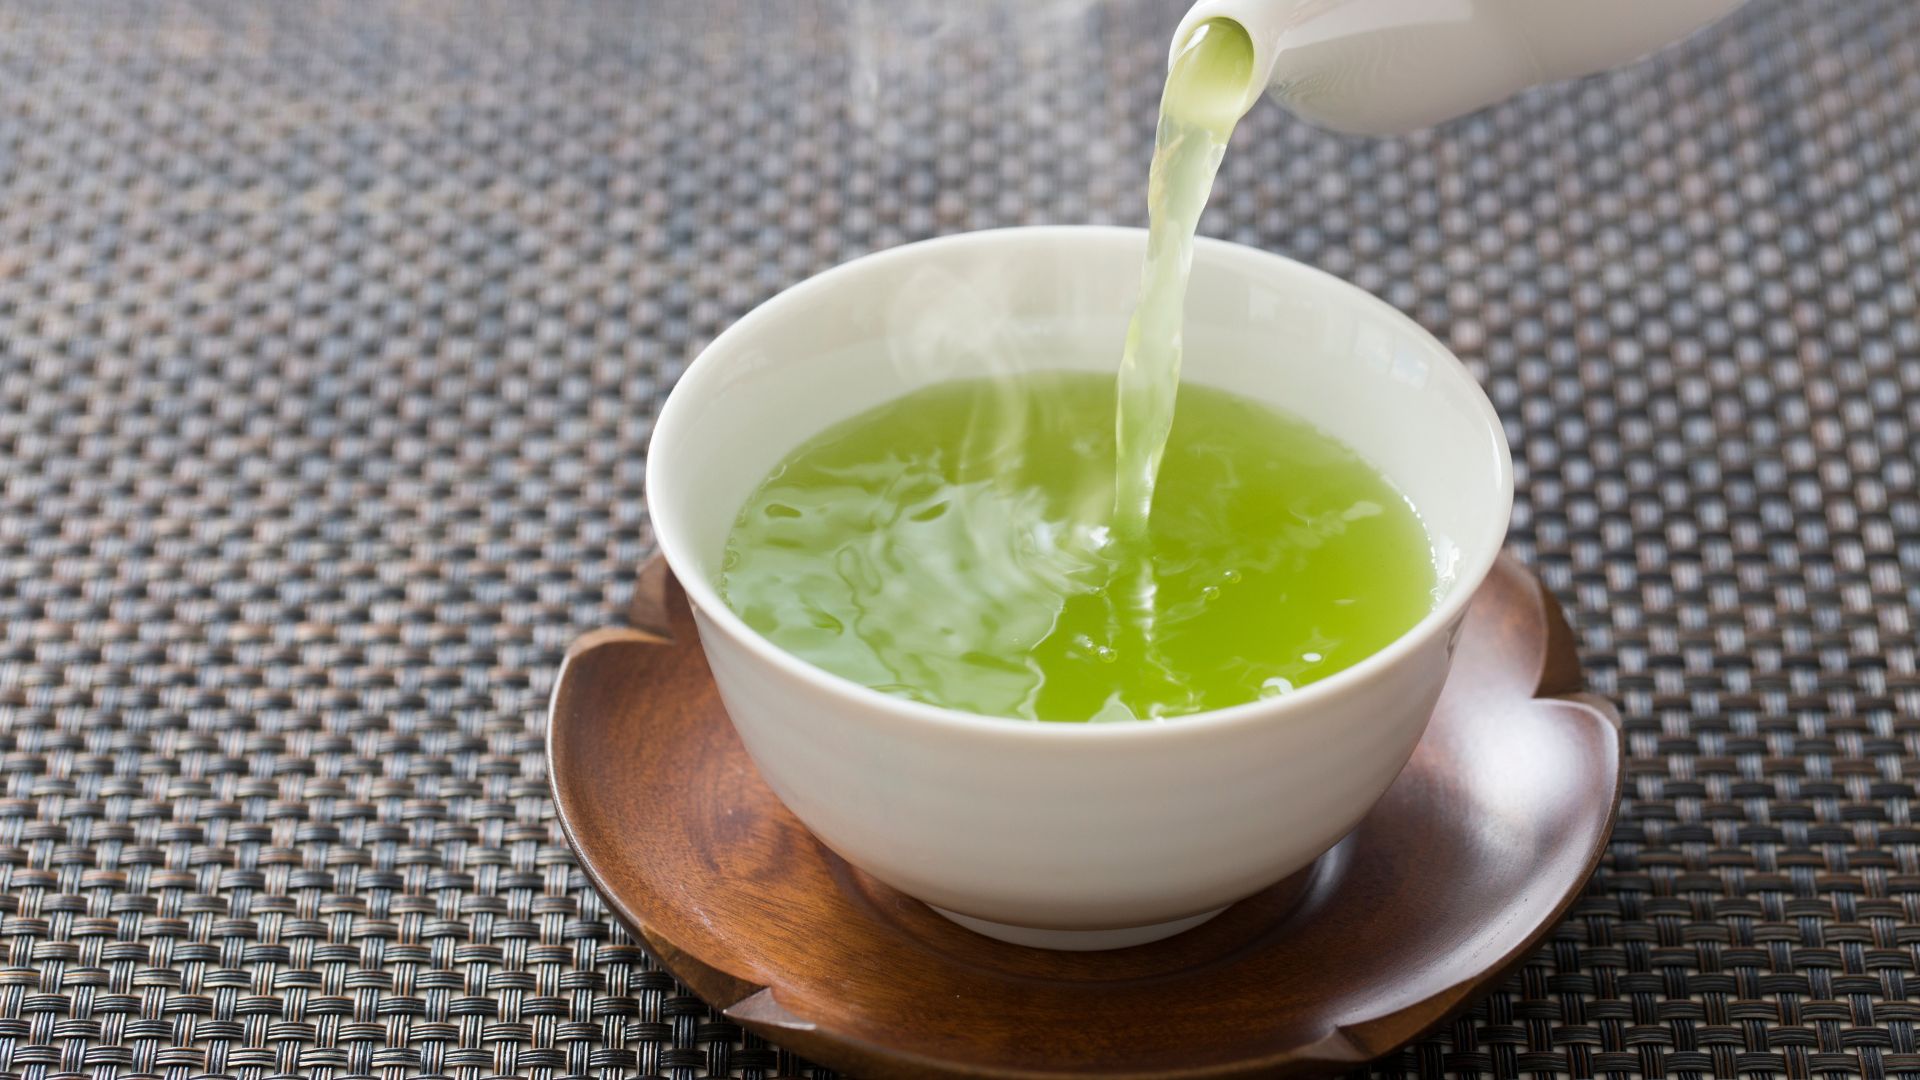 Je zelený čaj prospěšný pro zdraví? Přinášíme jasnou odpověď.